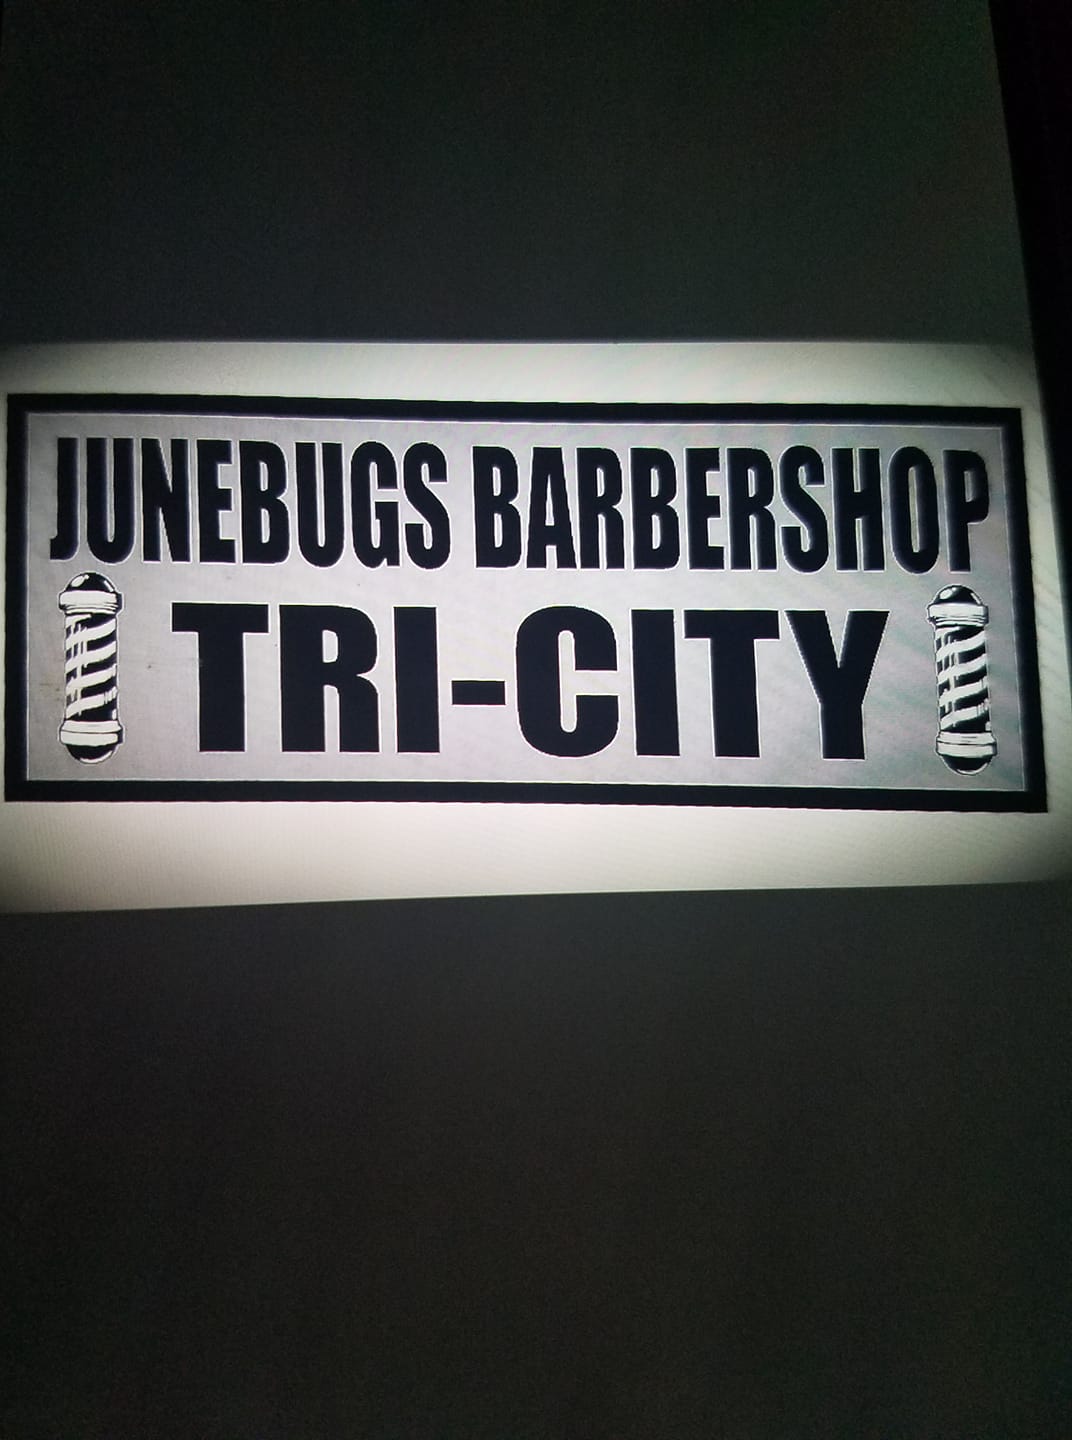 June Bug's Barbershop